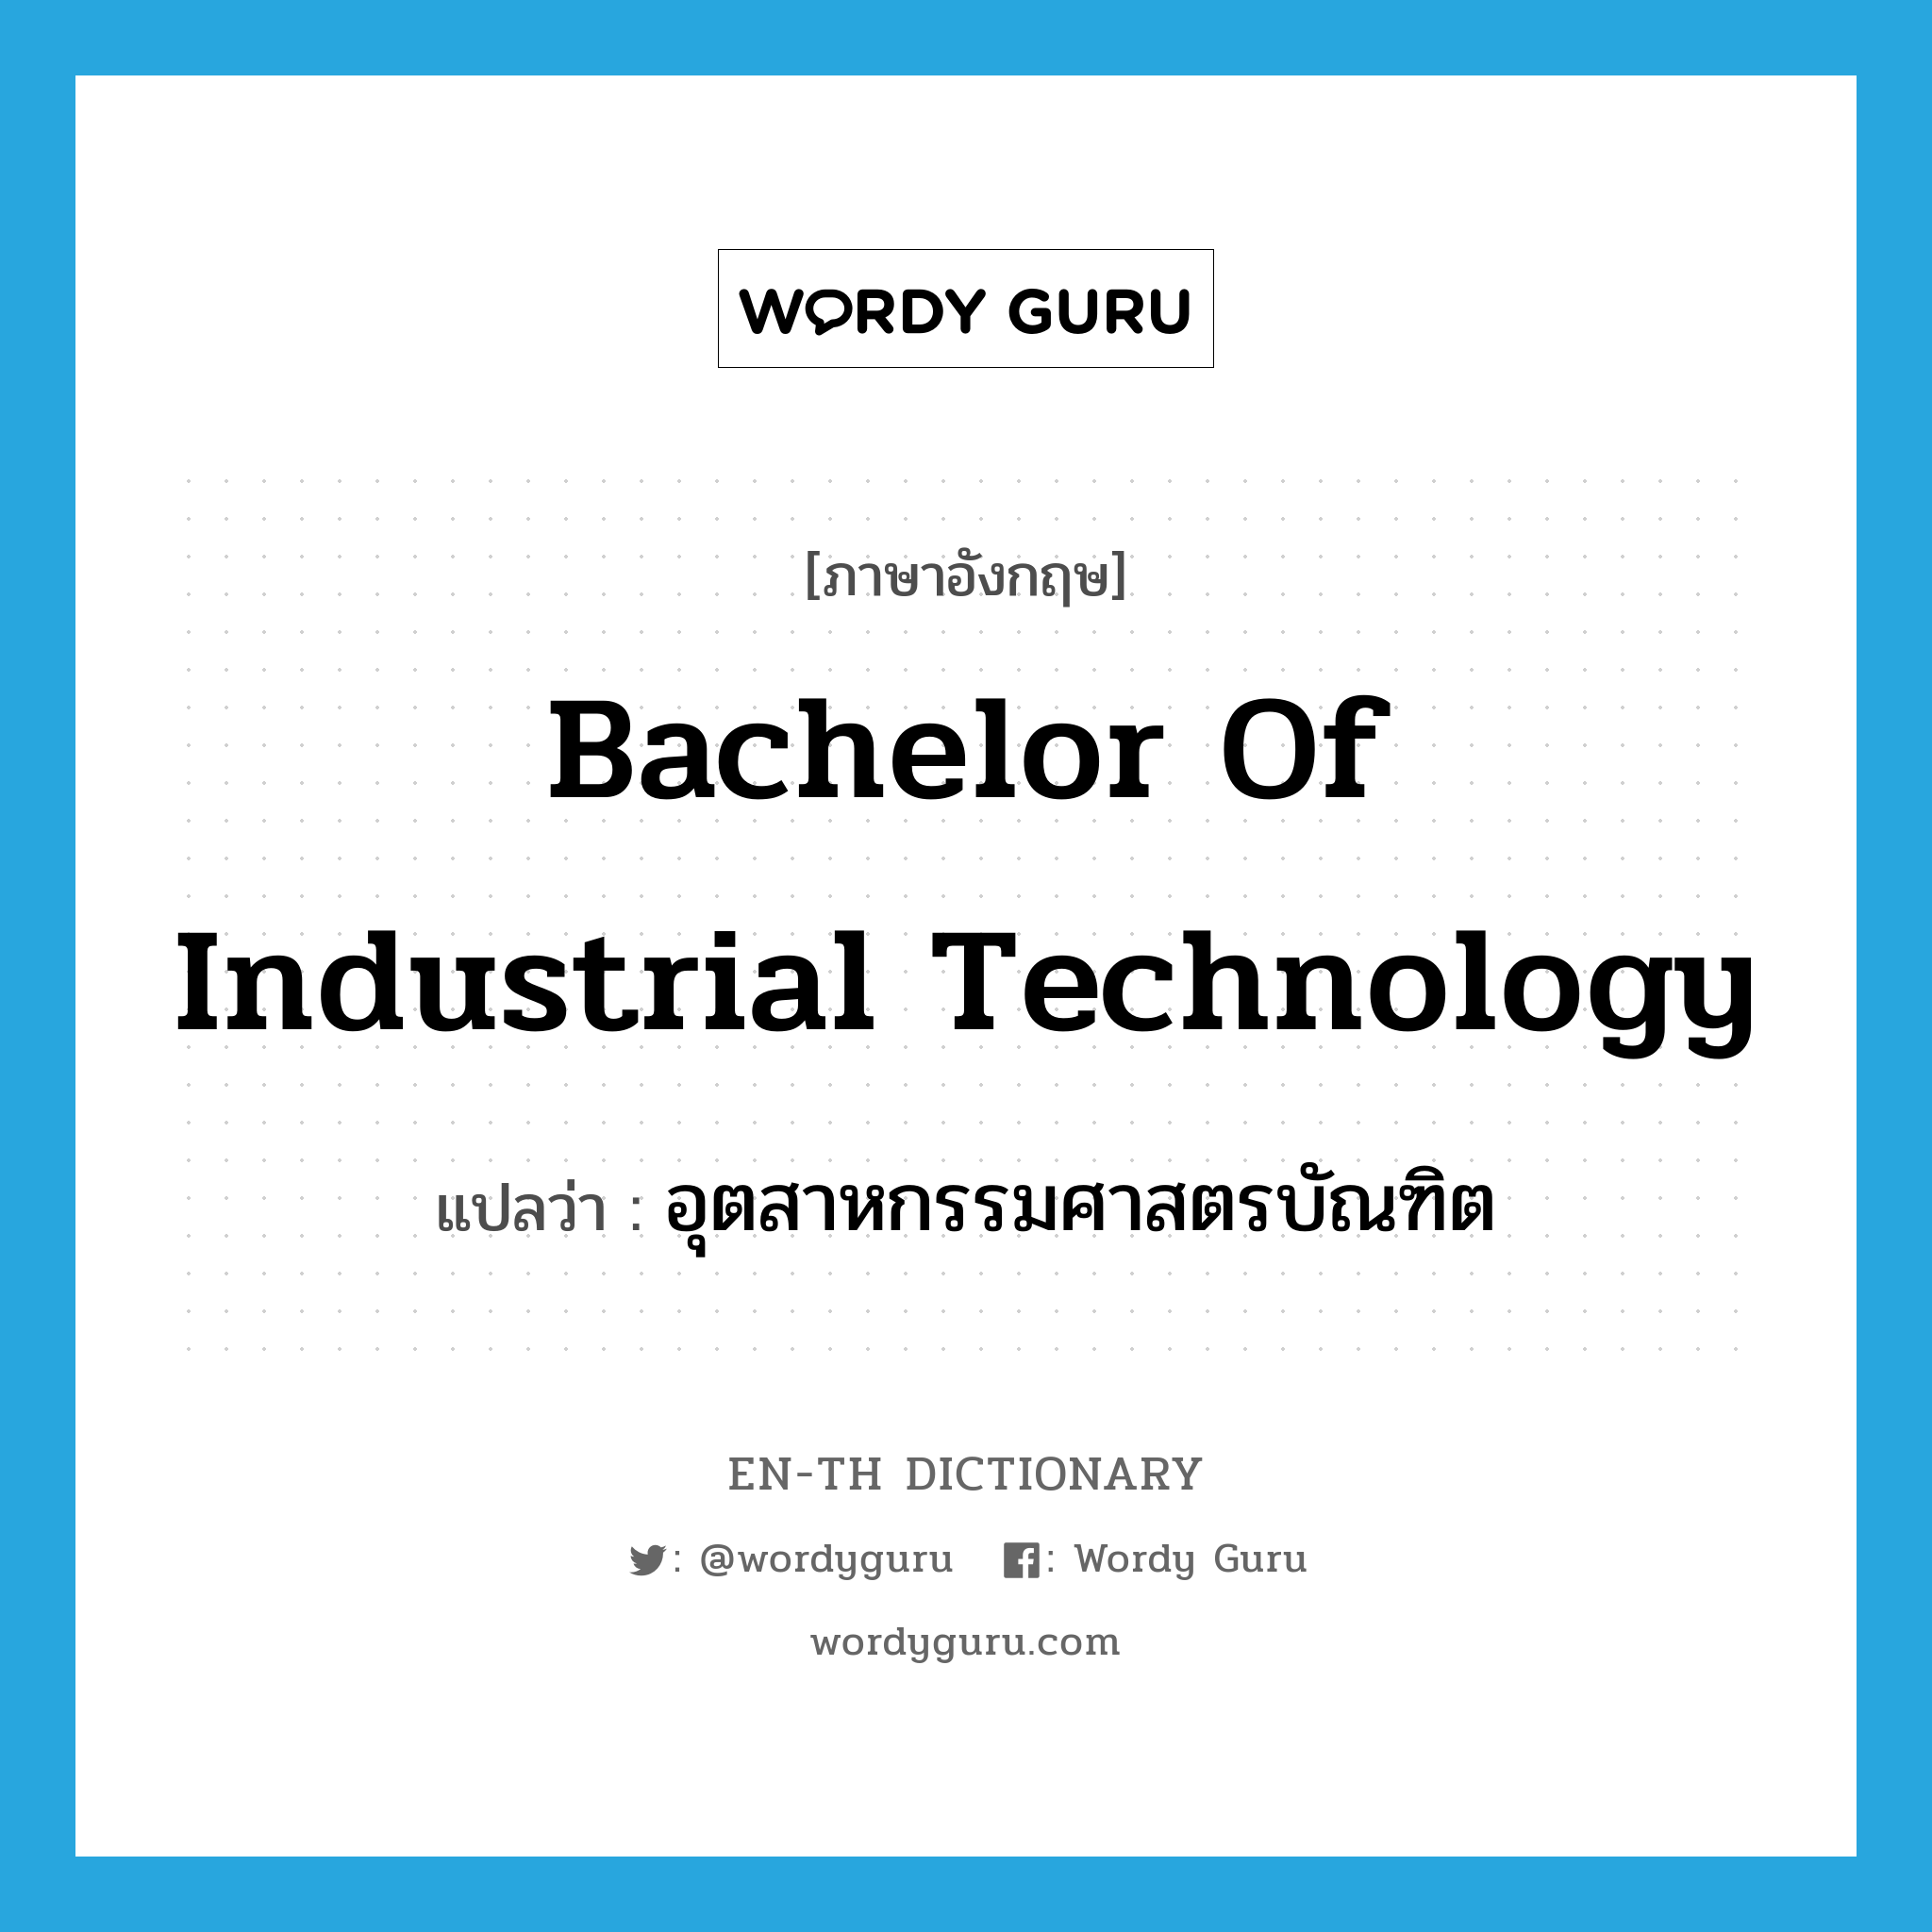 Bachelor of Industrial Technology แปลว่า?, คำศัพท์ภาษาอังกฤษ Bachelor of Industrial Technology แปลว่า อุตสาหกรรมศาสตรบัณฑิต ประเภท N หมวด N